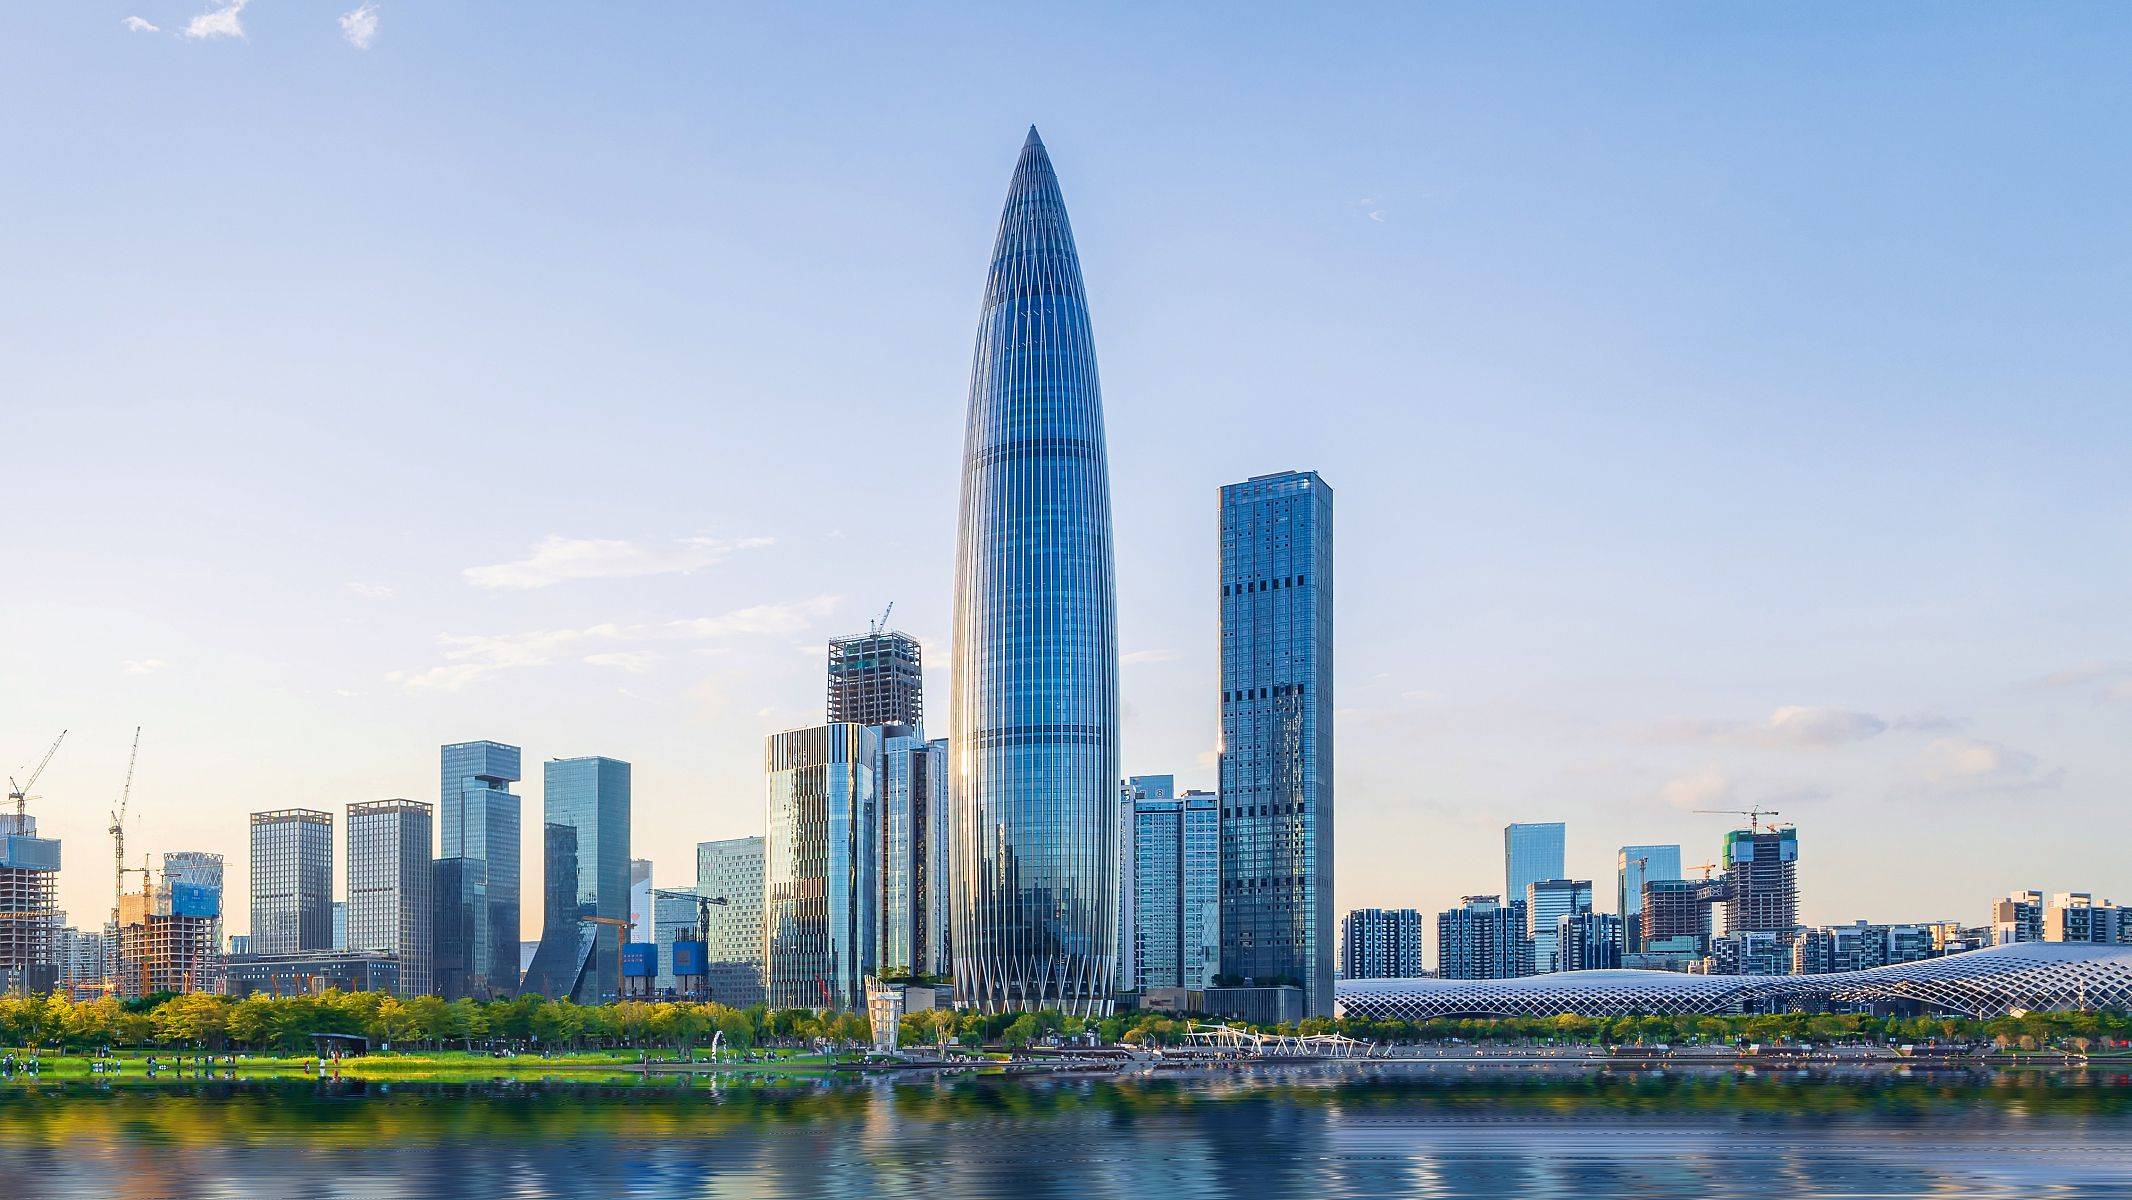 作为深圳湾第一高楼,中国华润大厦是集生态,商务,居住,文化等为一体